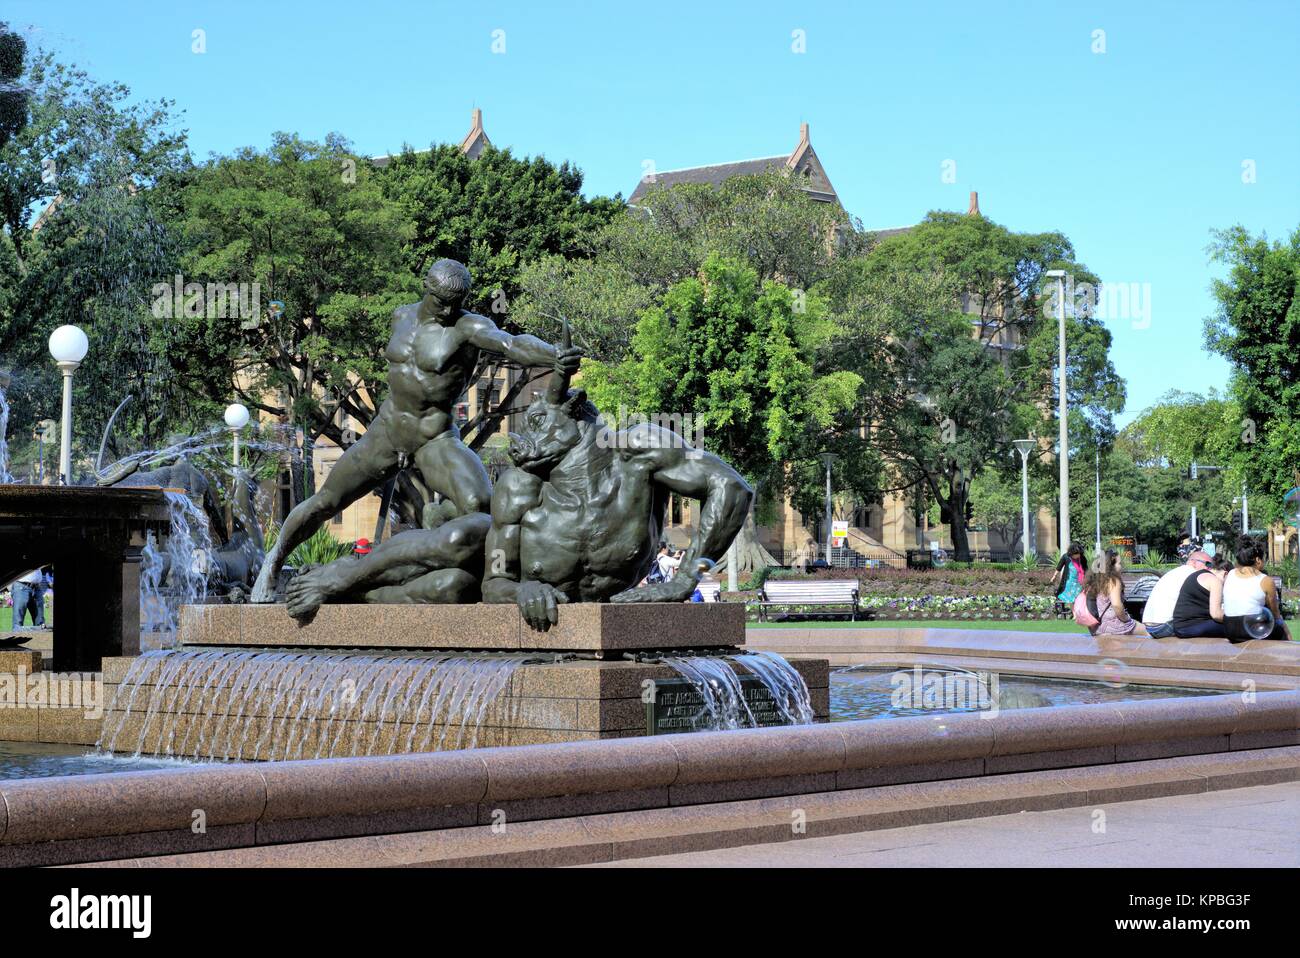 Touristen im Freien Sydney Australien. Theseus und Minotaurus Skulptur an Archibald Fountain am Hyde Park in Sydney, Australien. Stockfoto